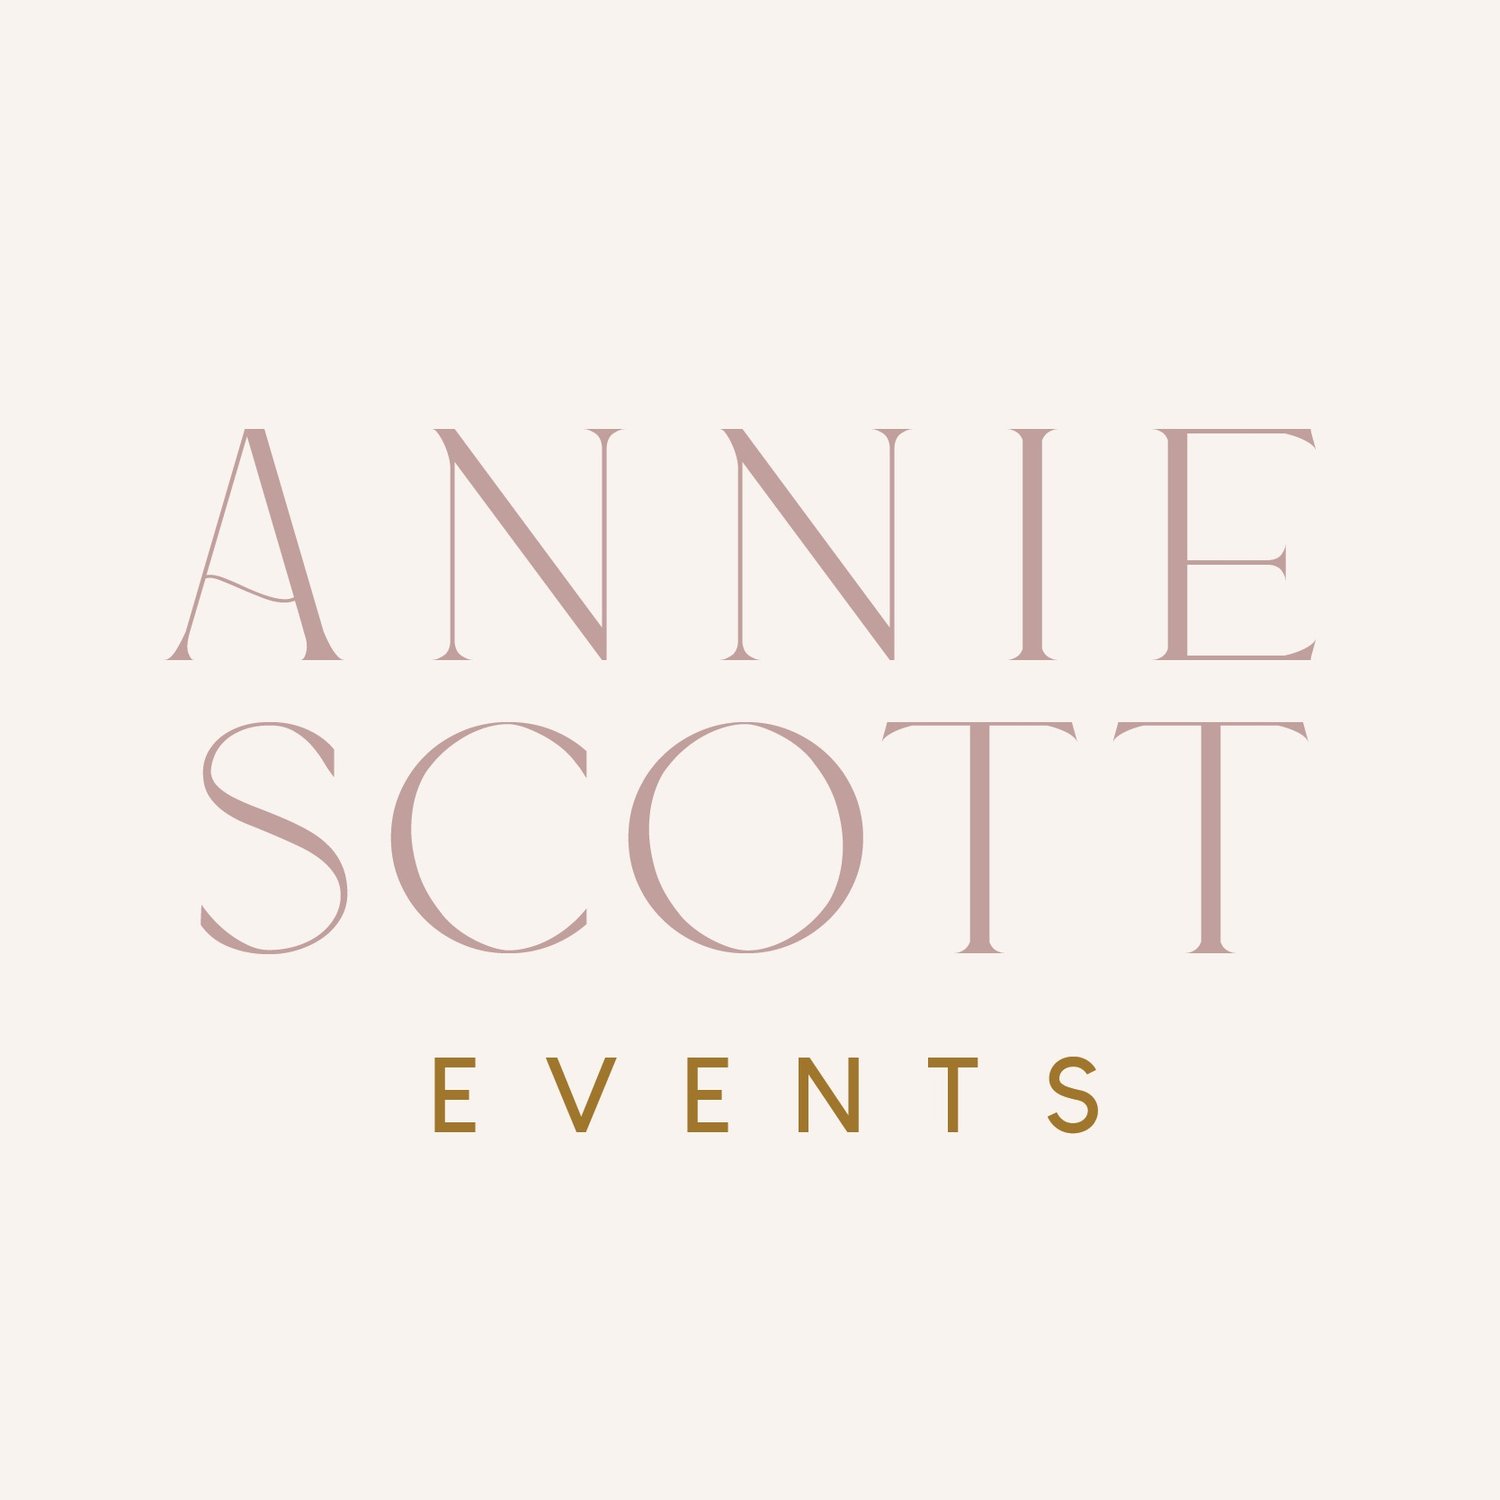 Annie Scott Events